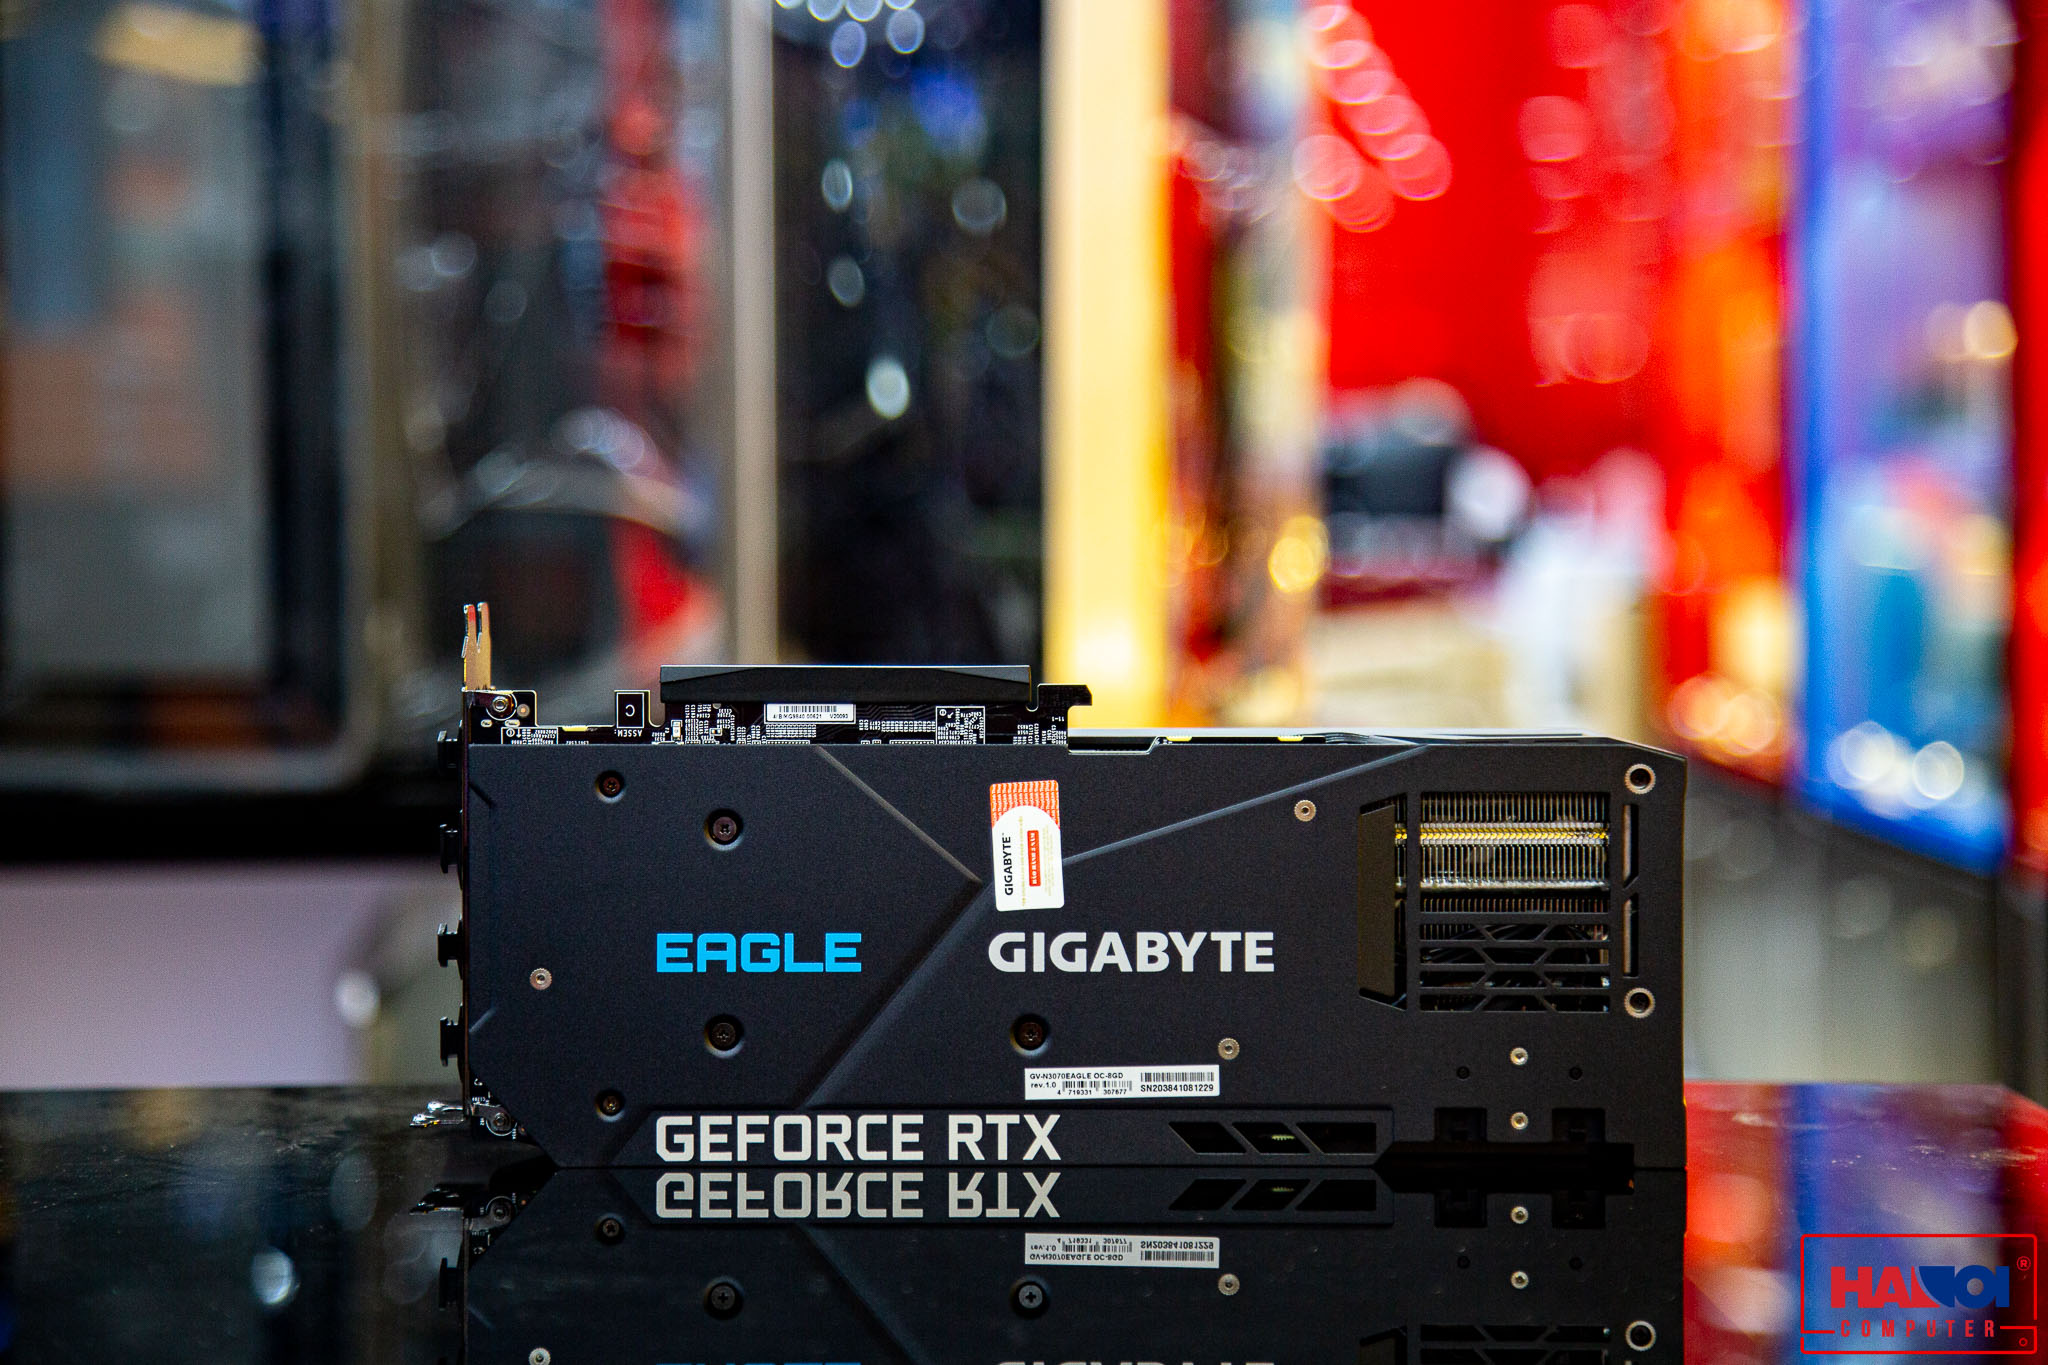 Card màn hình Gigabyte RTX 3070 Ti EAGLE OC - 8GD